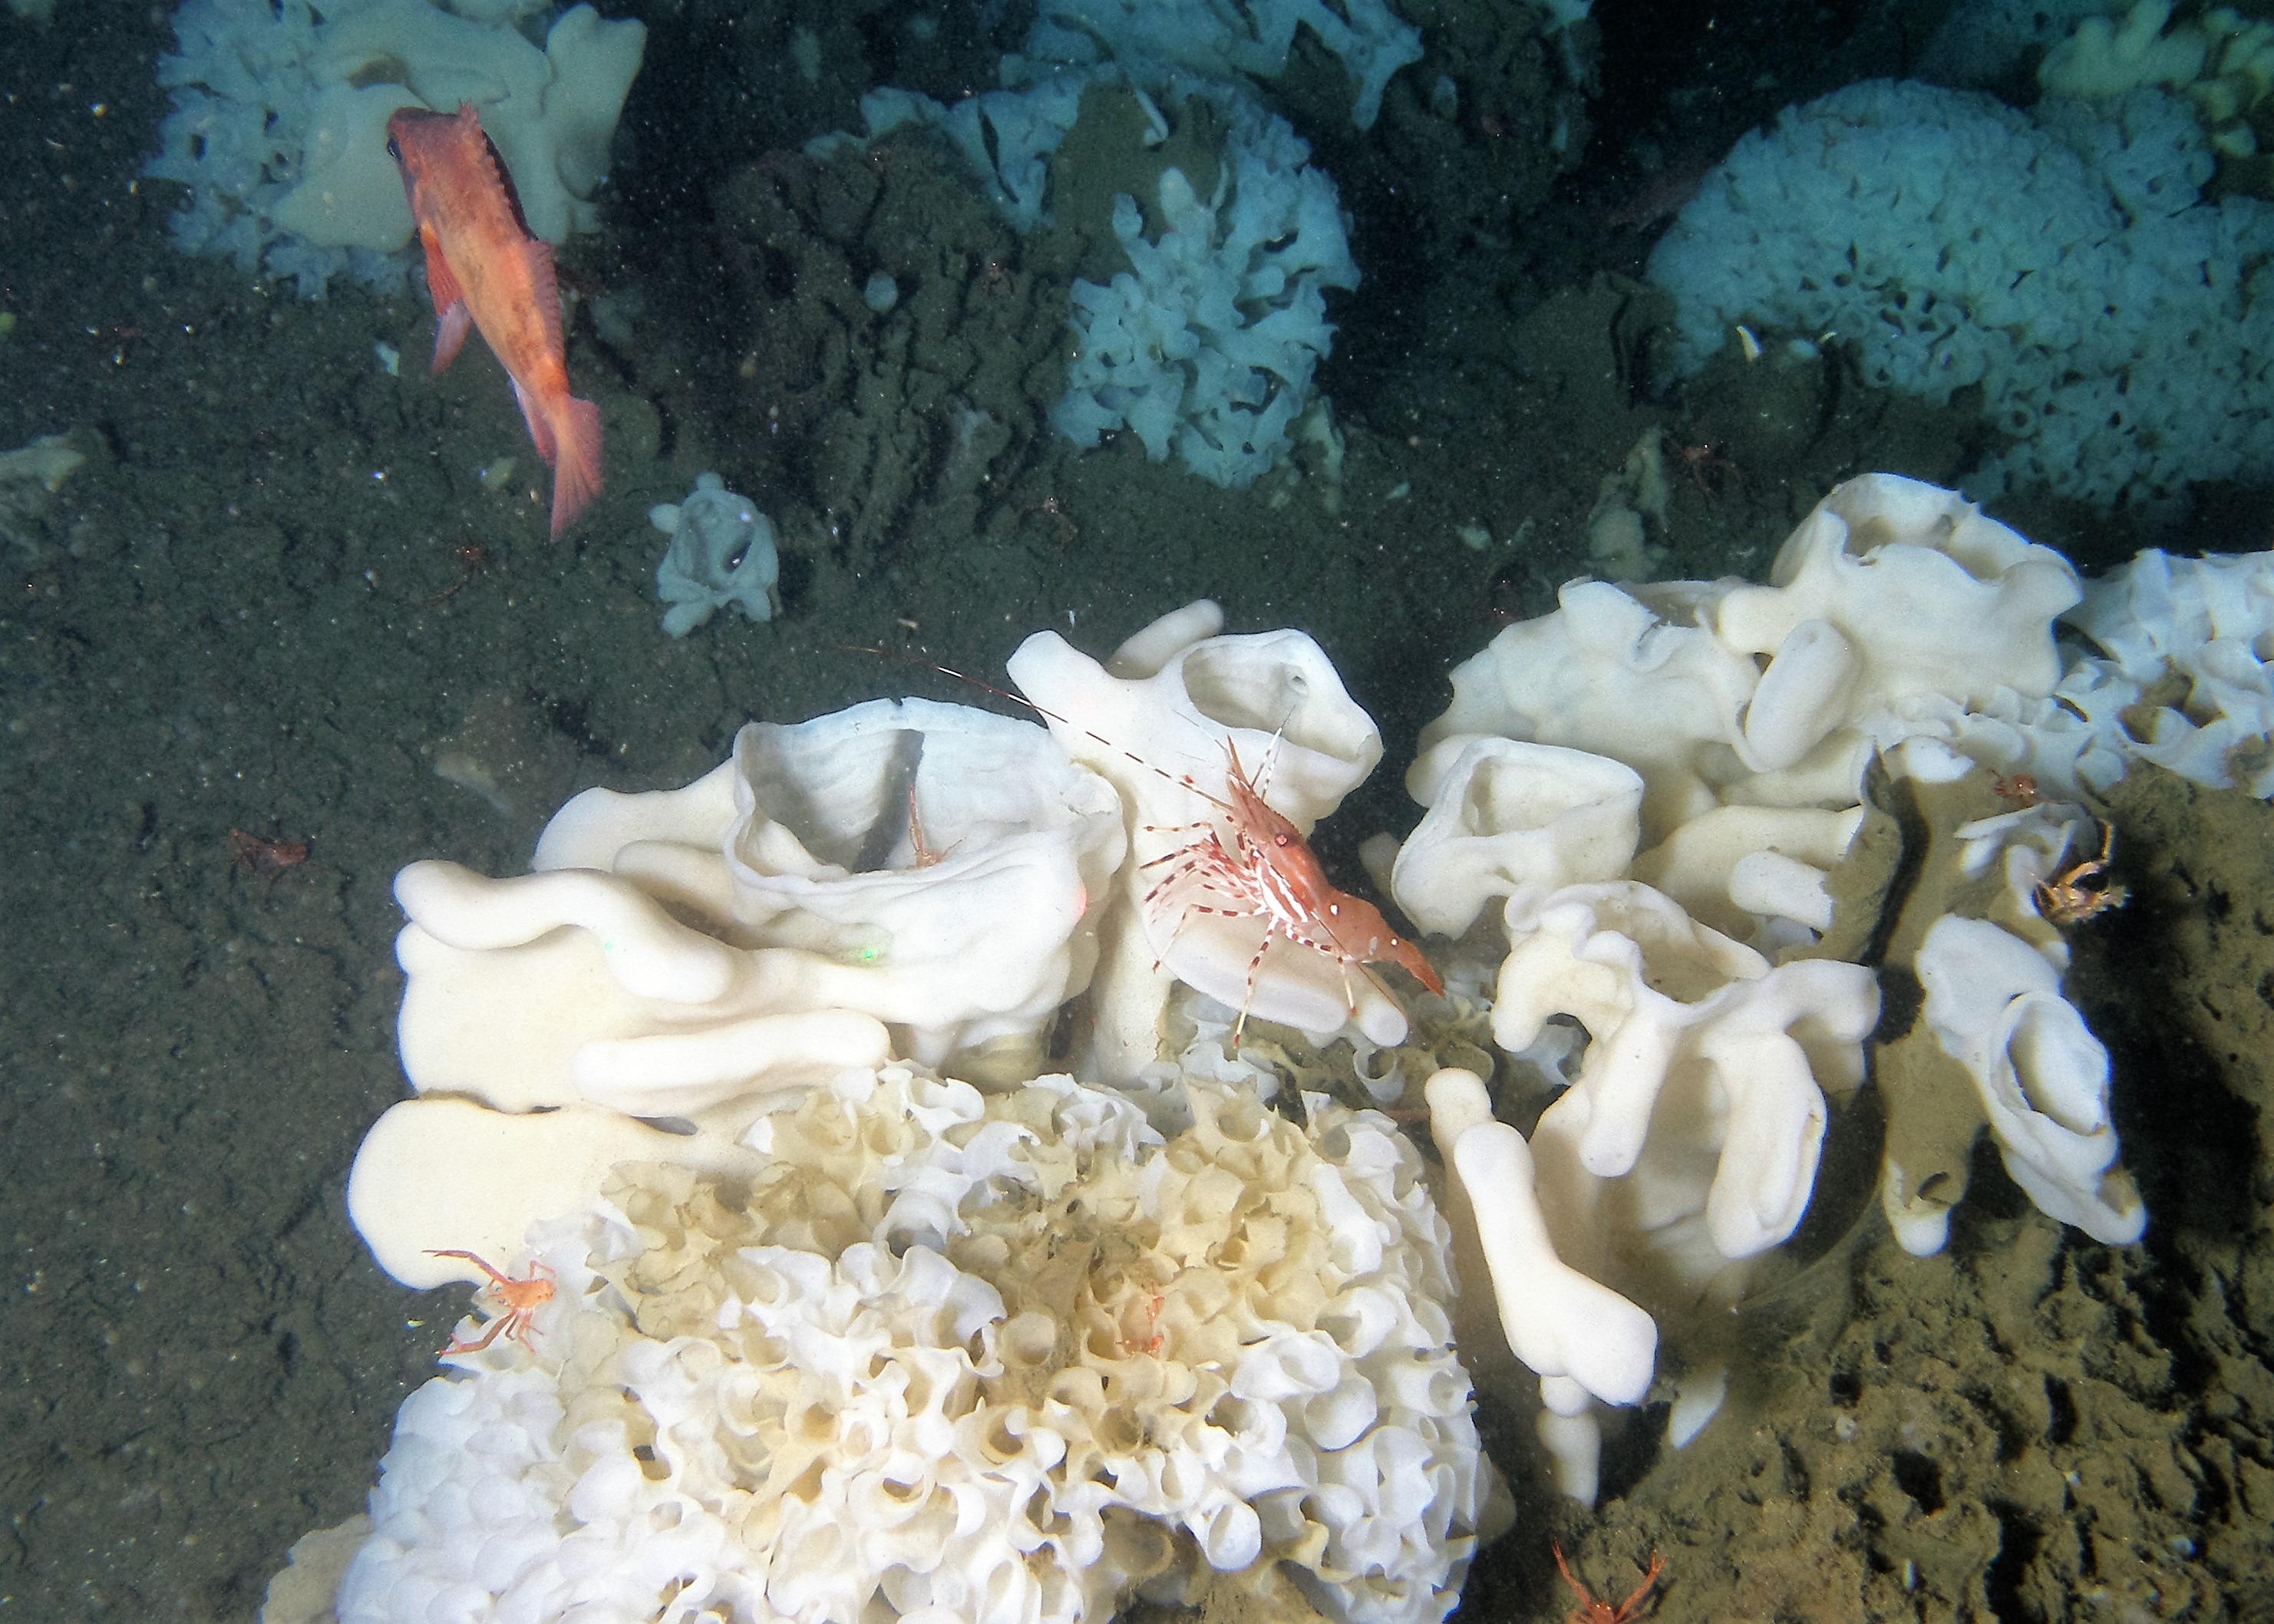 Les récifs d’éponges siliceuses servent de refuge et de sources de nourriture à de nombreuses espèces de poisson. Photo gracieusement fournie par le ministère des Pêches et des Océans du Canada